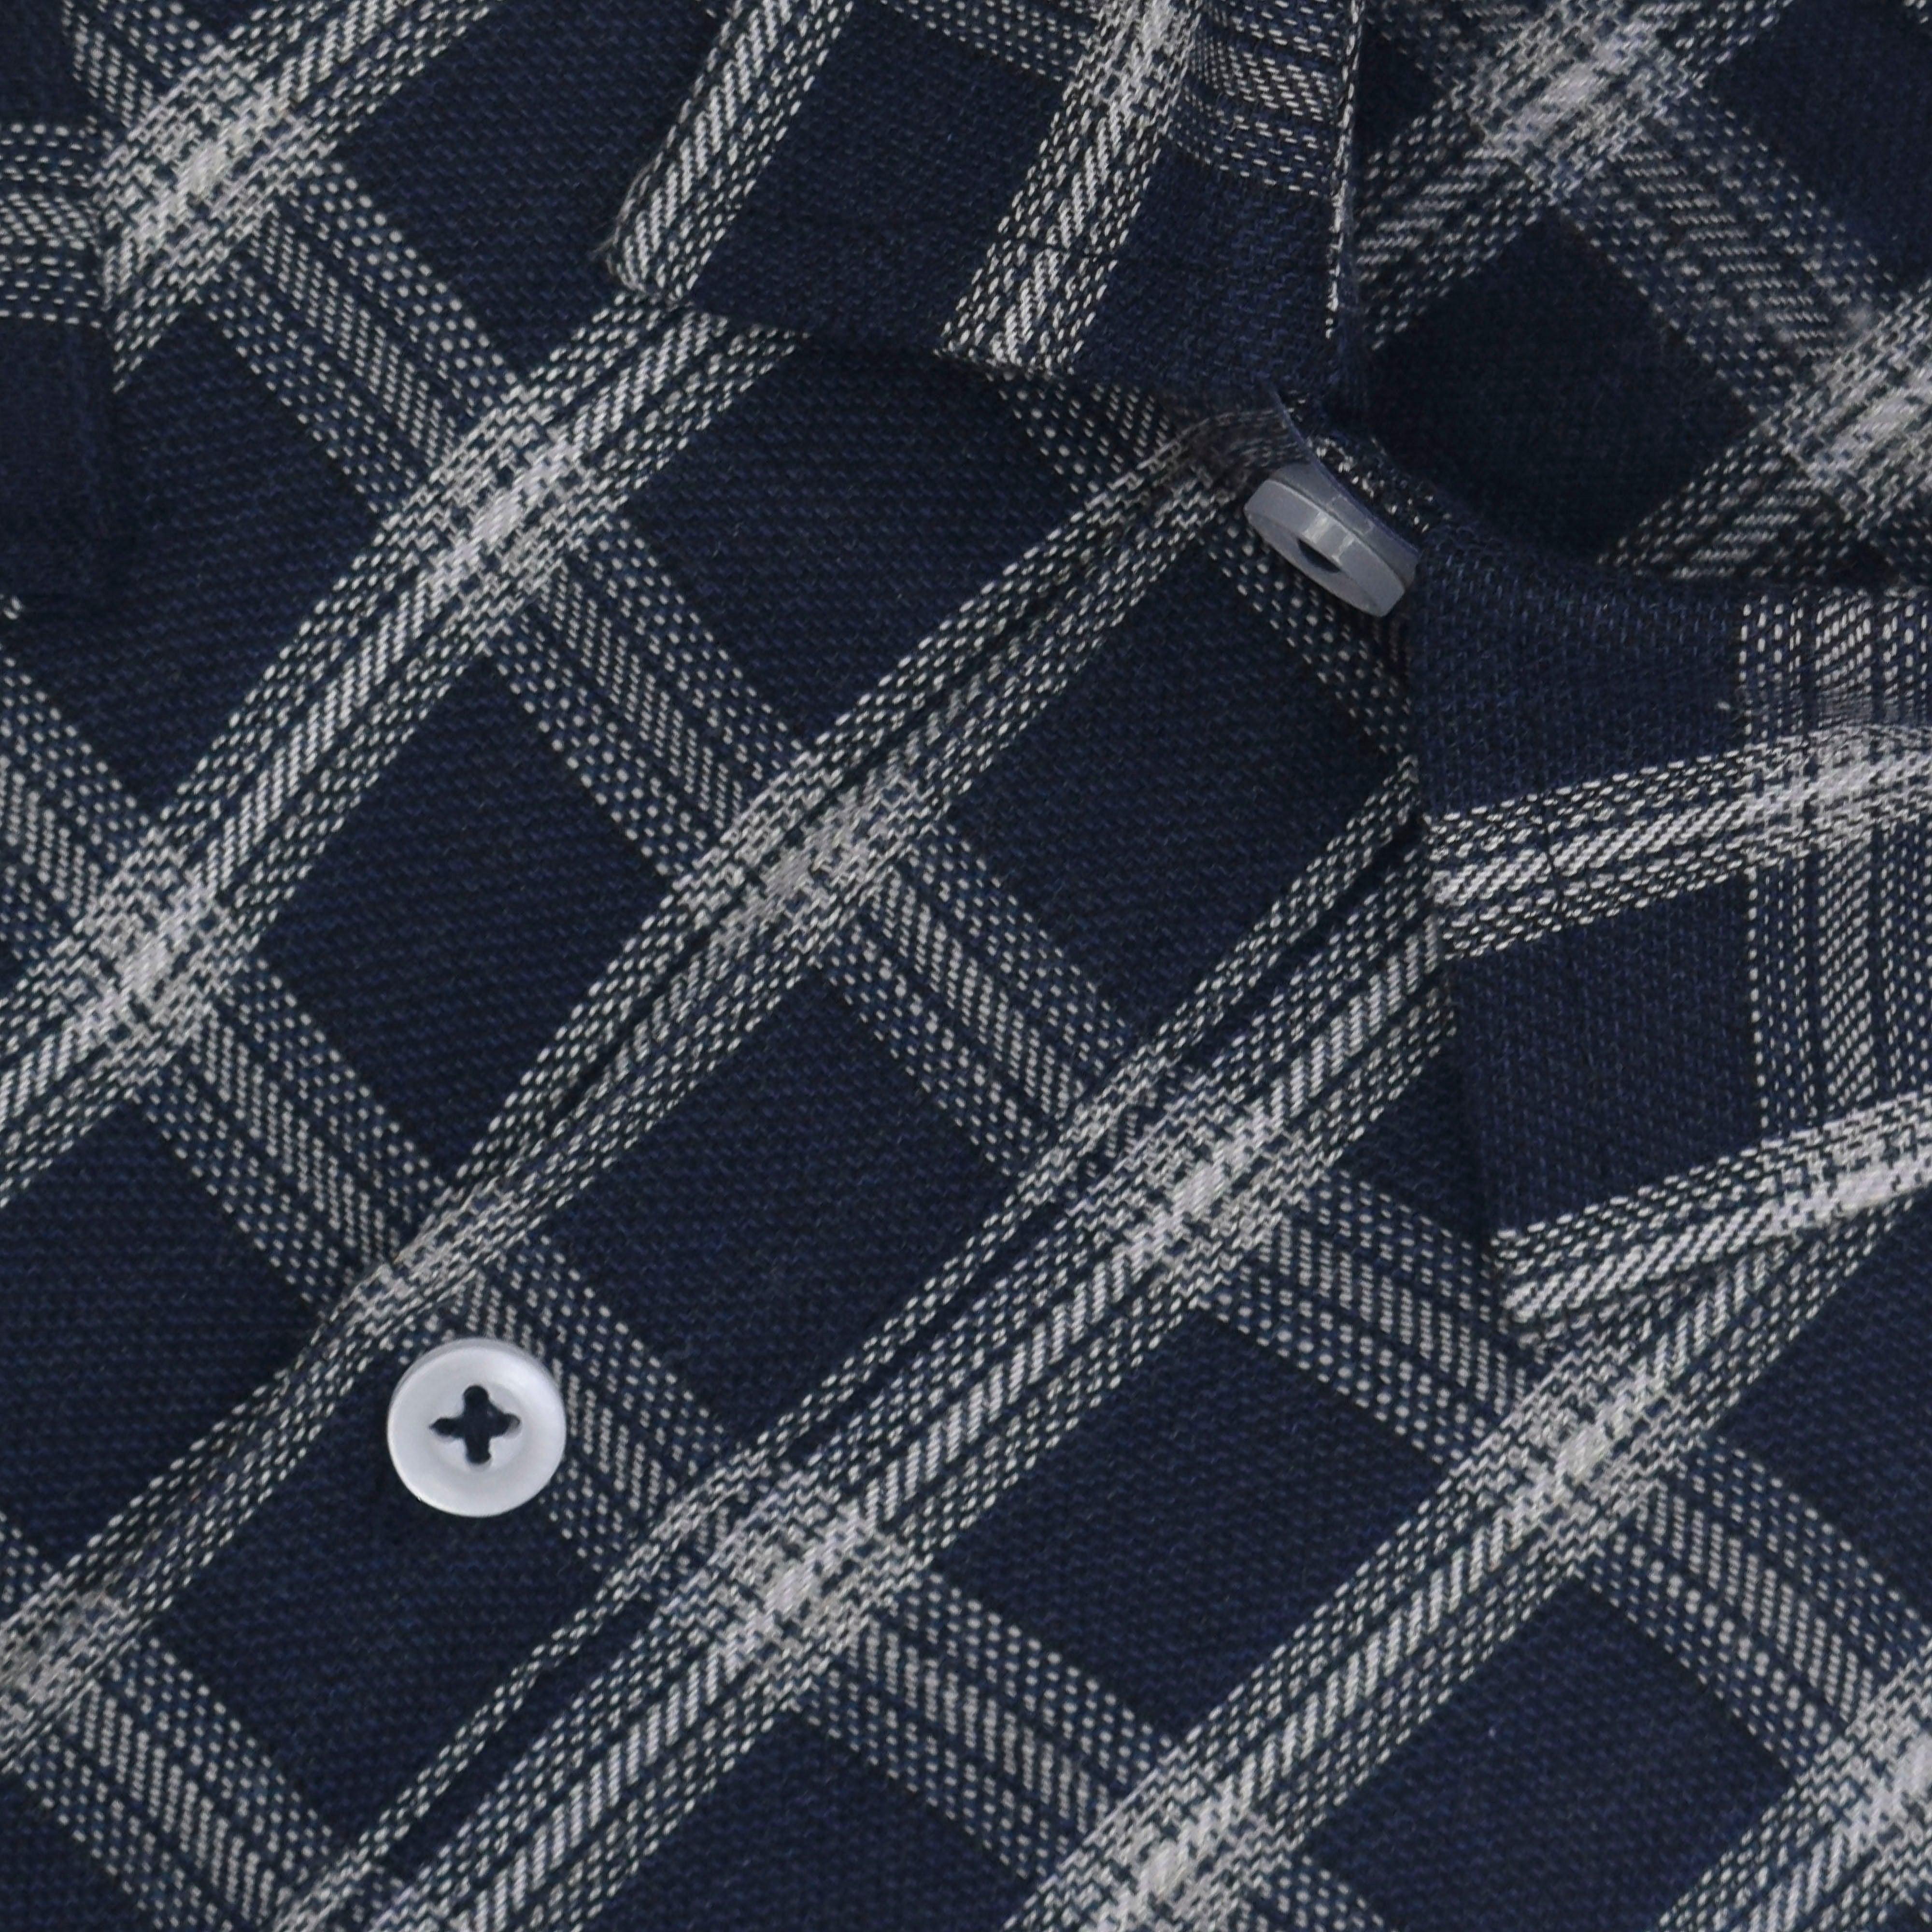 Men's 100% Cotton Windowpane Checkered Half Sleeves Shirt (Navy)